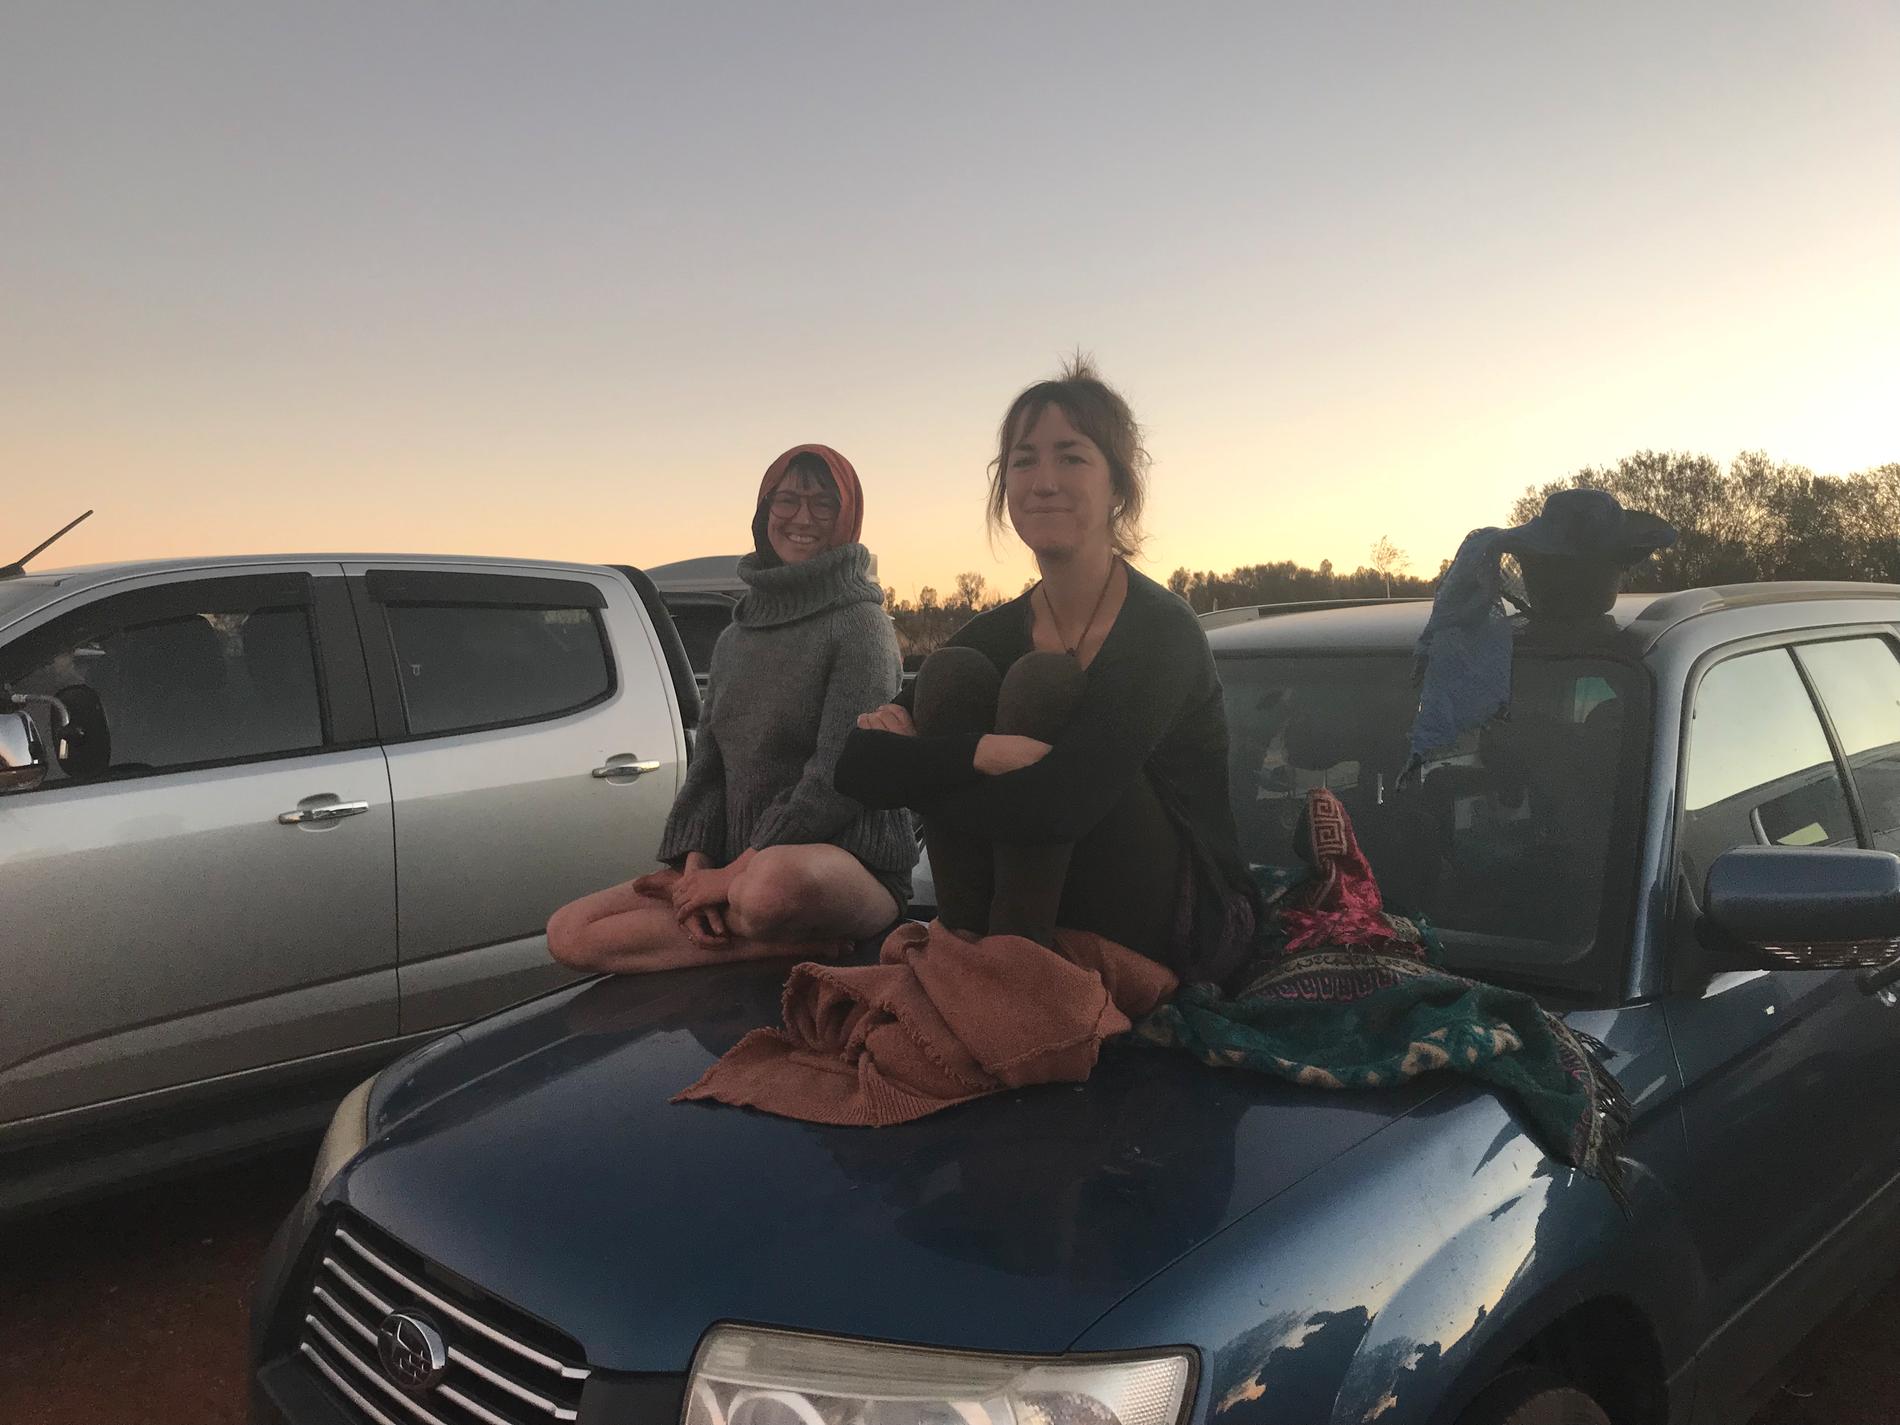 Cassie och Candice från Alice Springs, två av de många turister som samlas i solnedgången för att beundra Uluru (Ayers Rock). Jätteklippan är känd som Australiens hjärta.